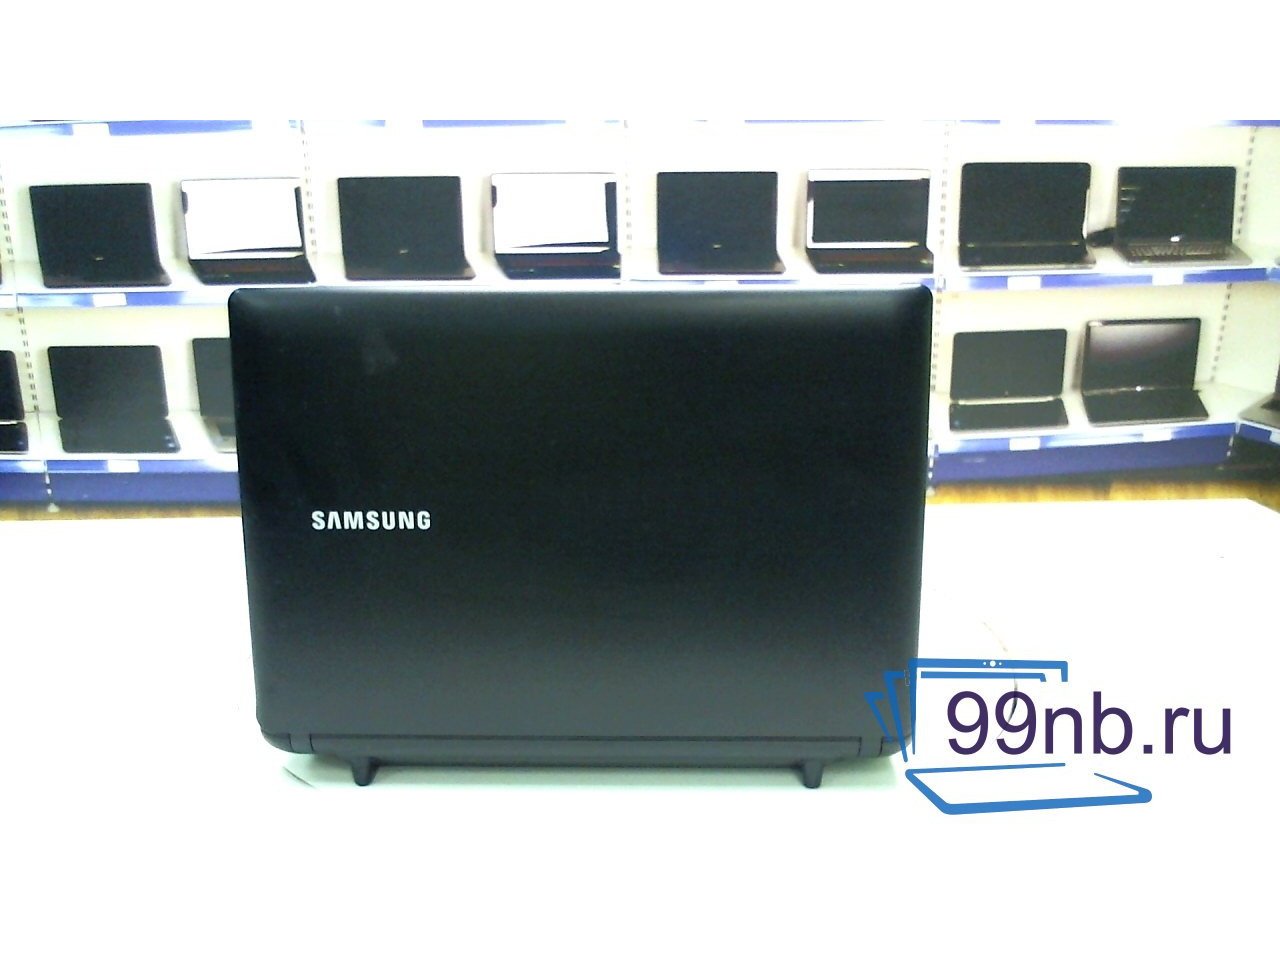 Samsung np-n145-jp02ru plus